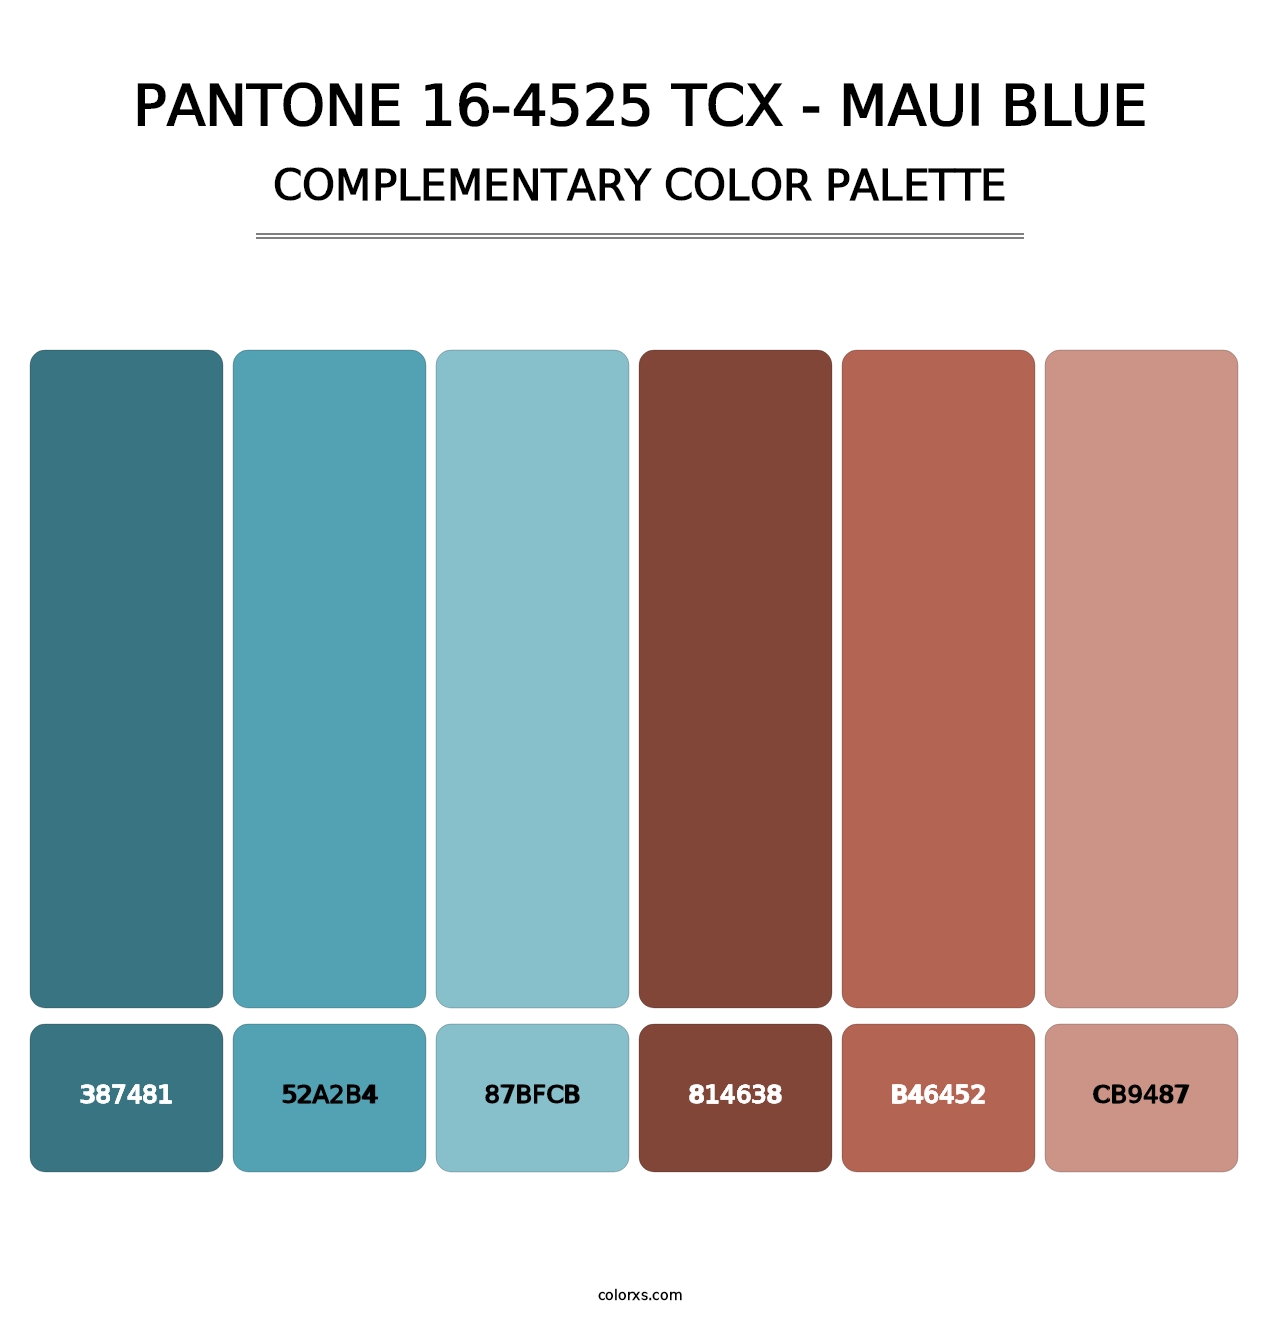 PANTONE 16-4525 TCX - Maui Blue - Complementary Color Palette